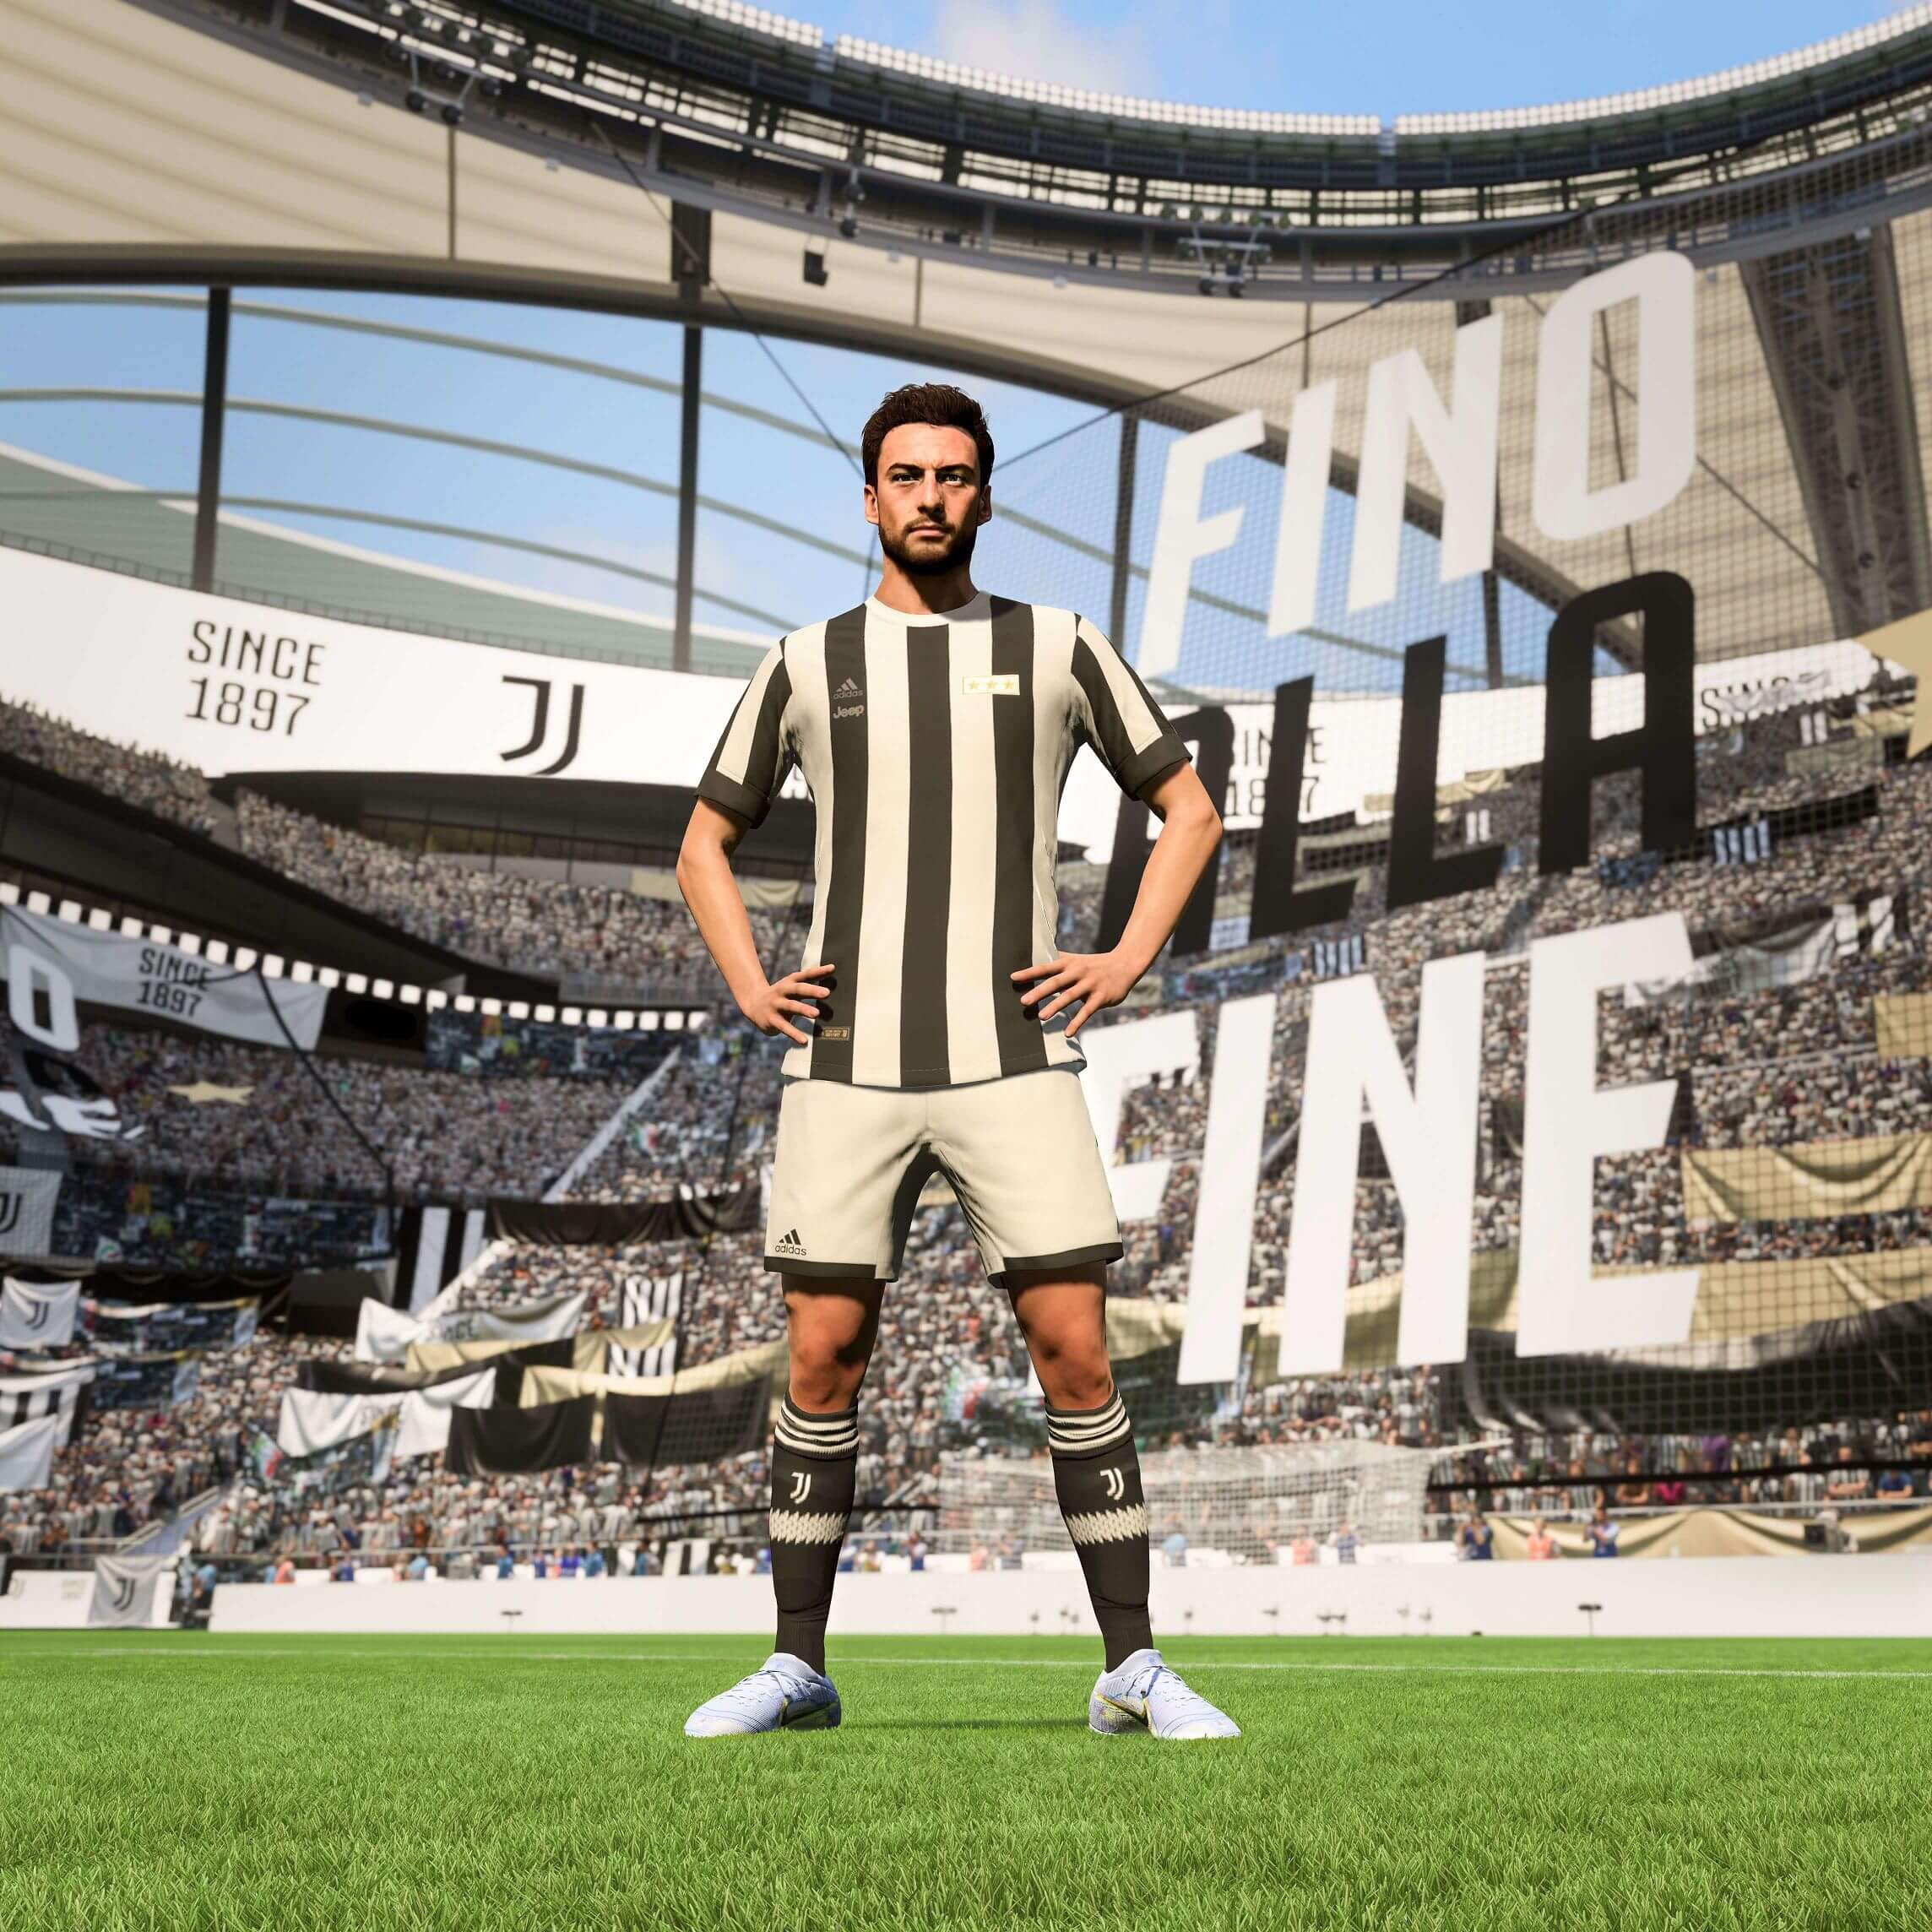 EA SPORTS™ FIFA 23 - Jogo Completo PC